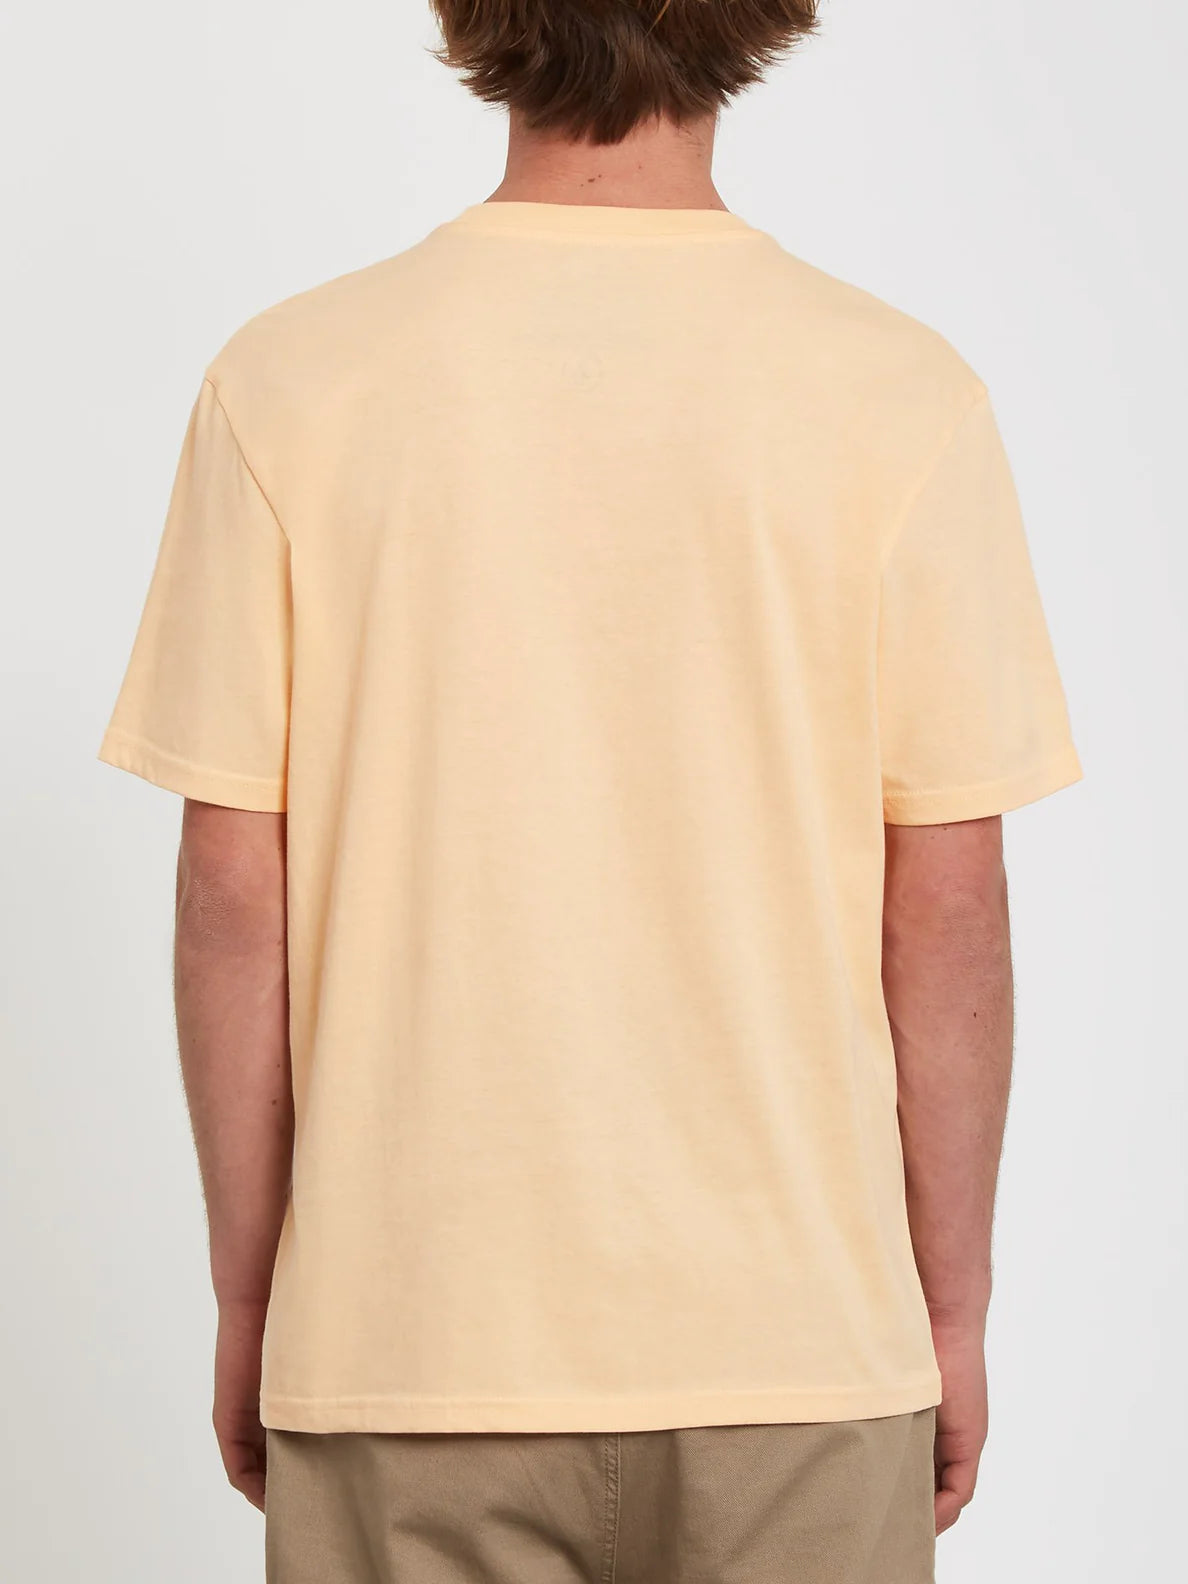 Camiseta Volcom Solid Stone Cream Blush